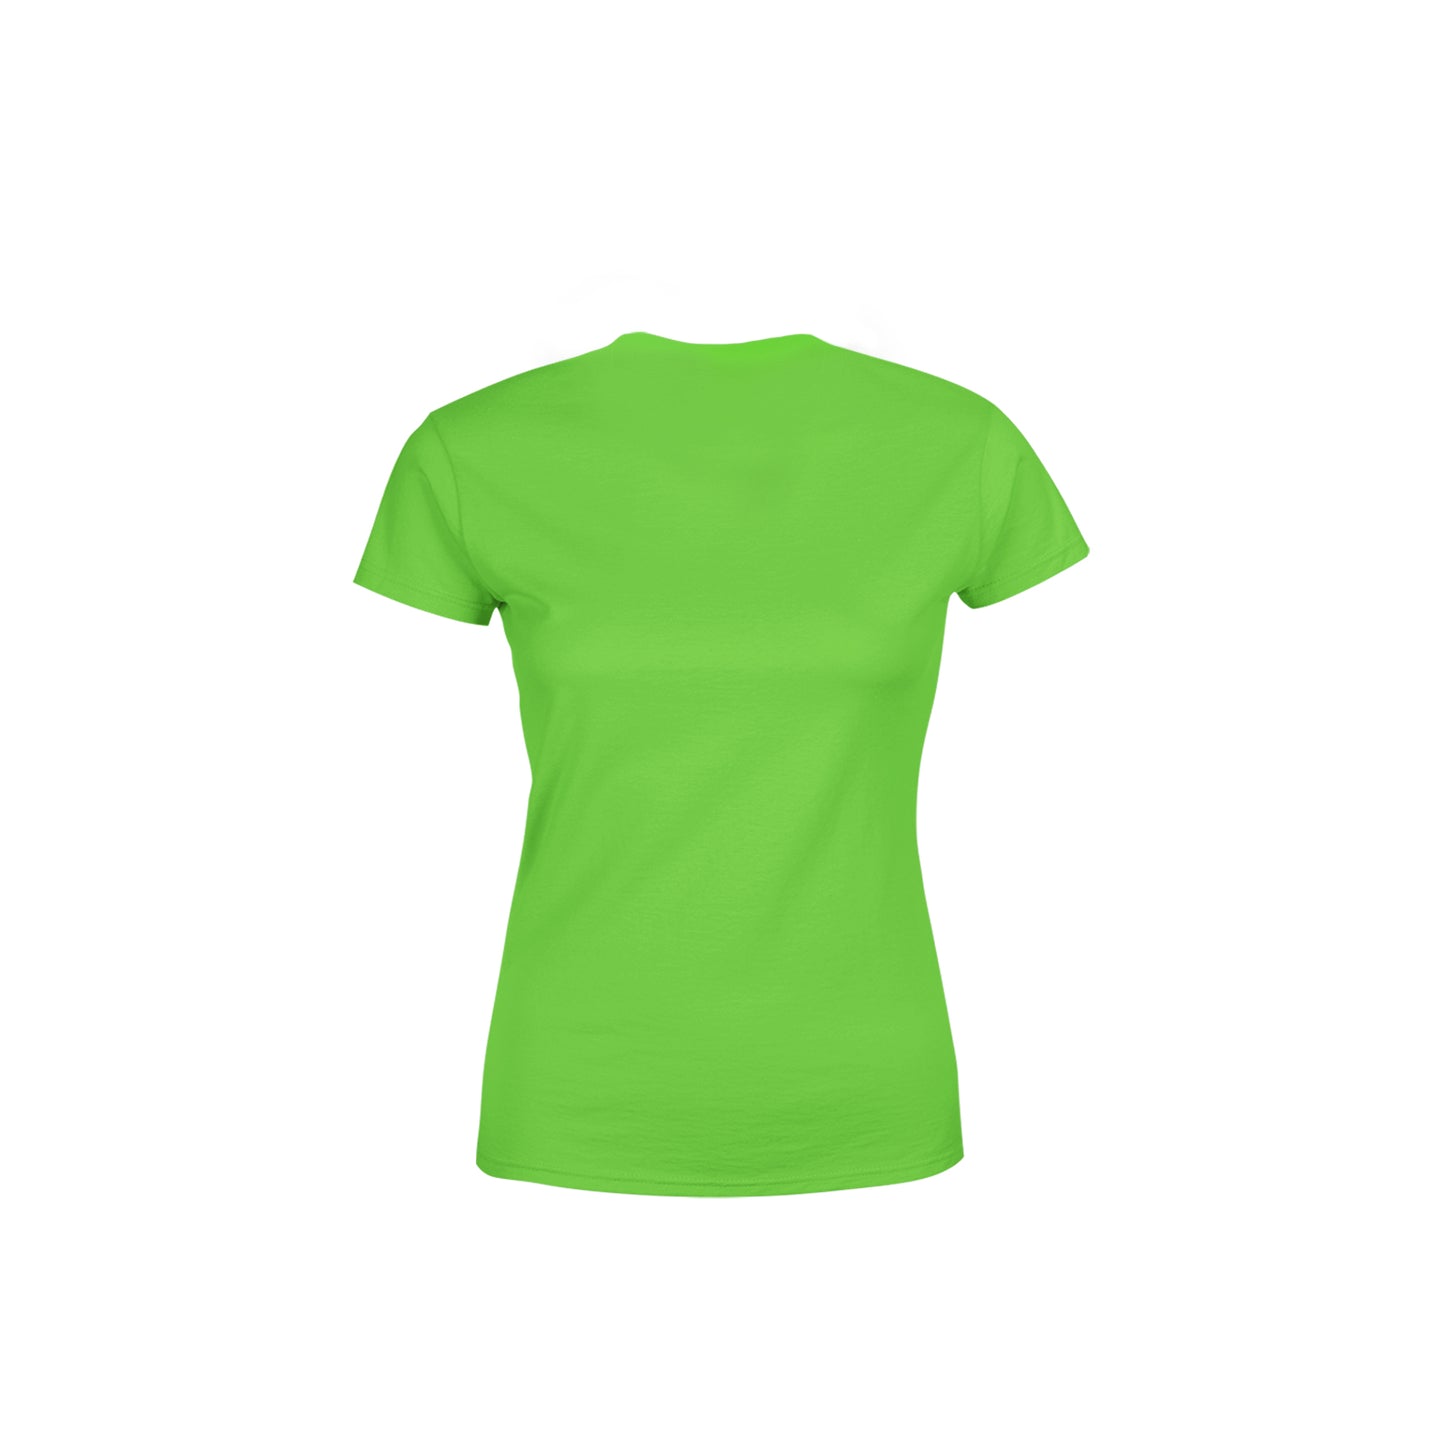 54 Number Women's T-Shirt (Liril Green)